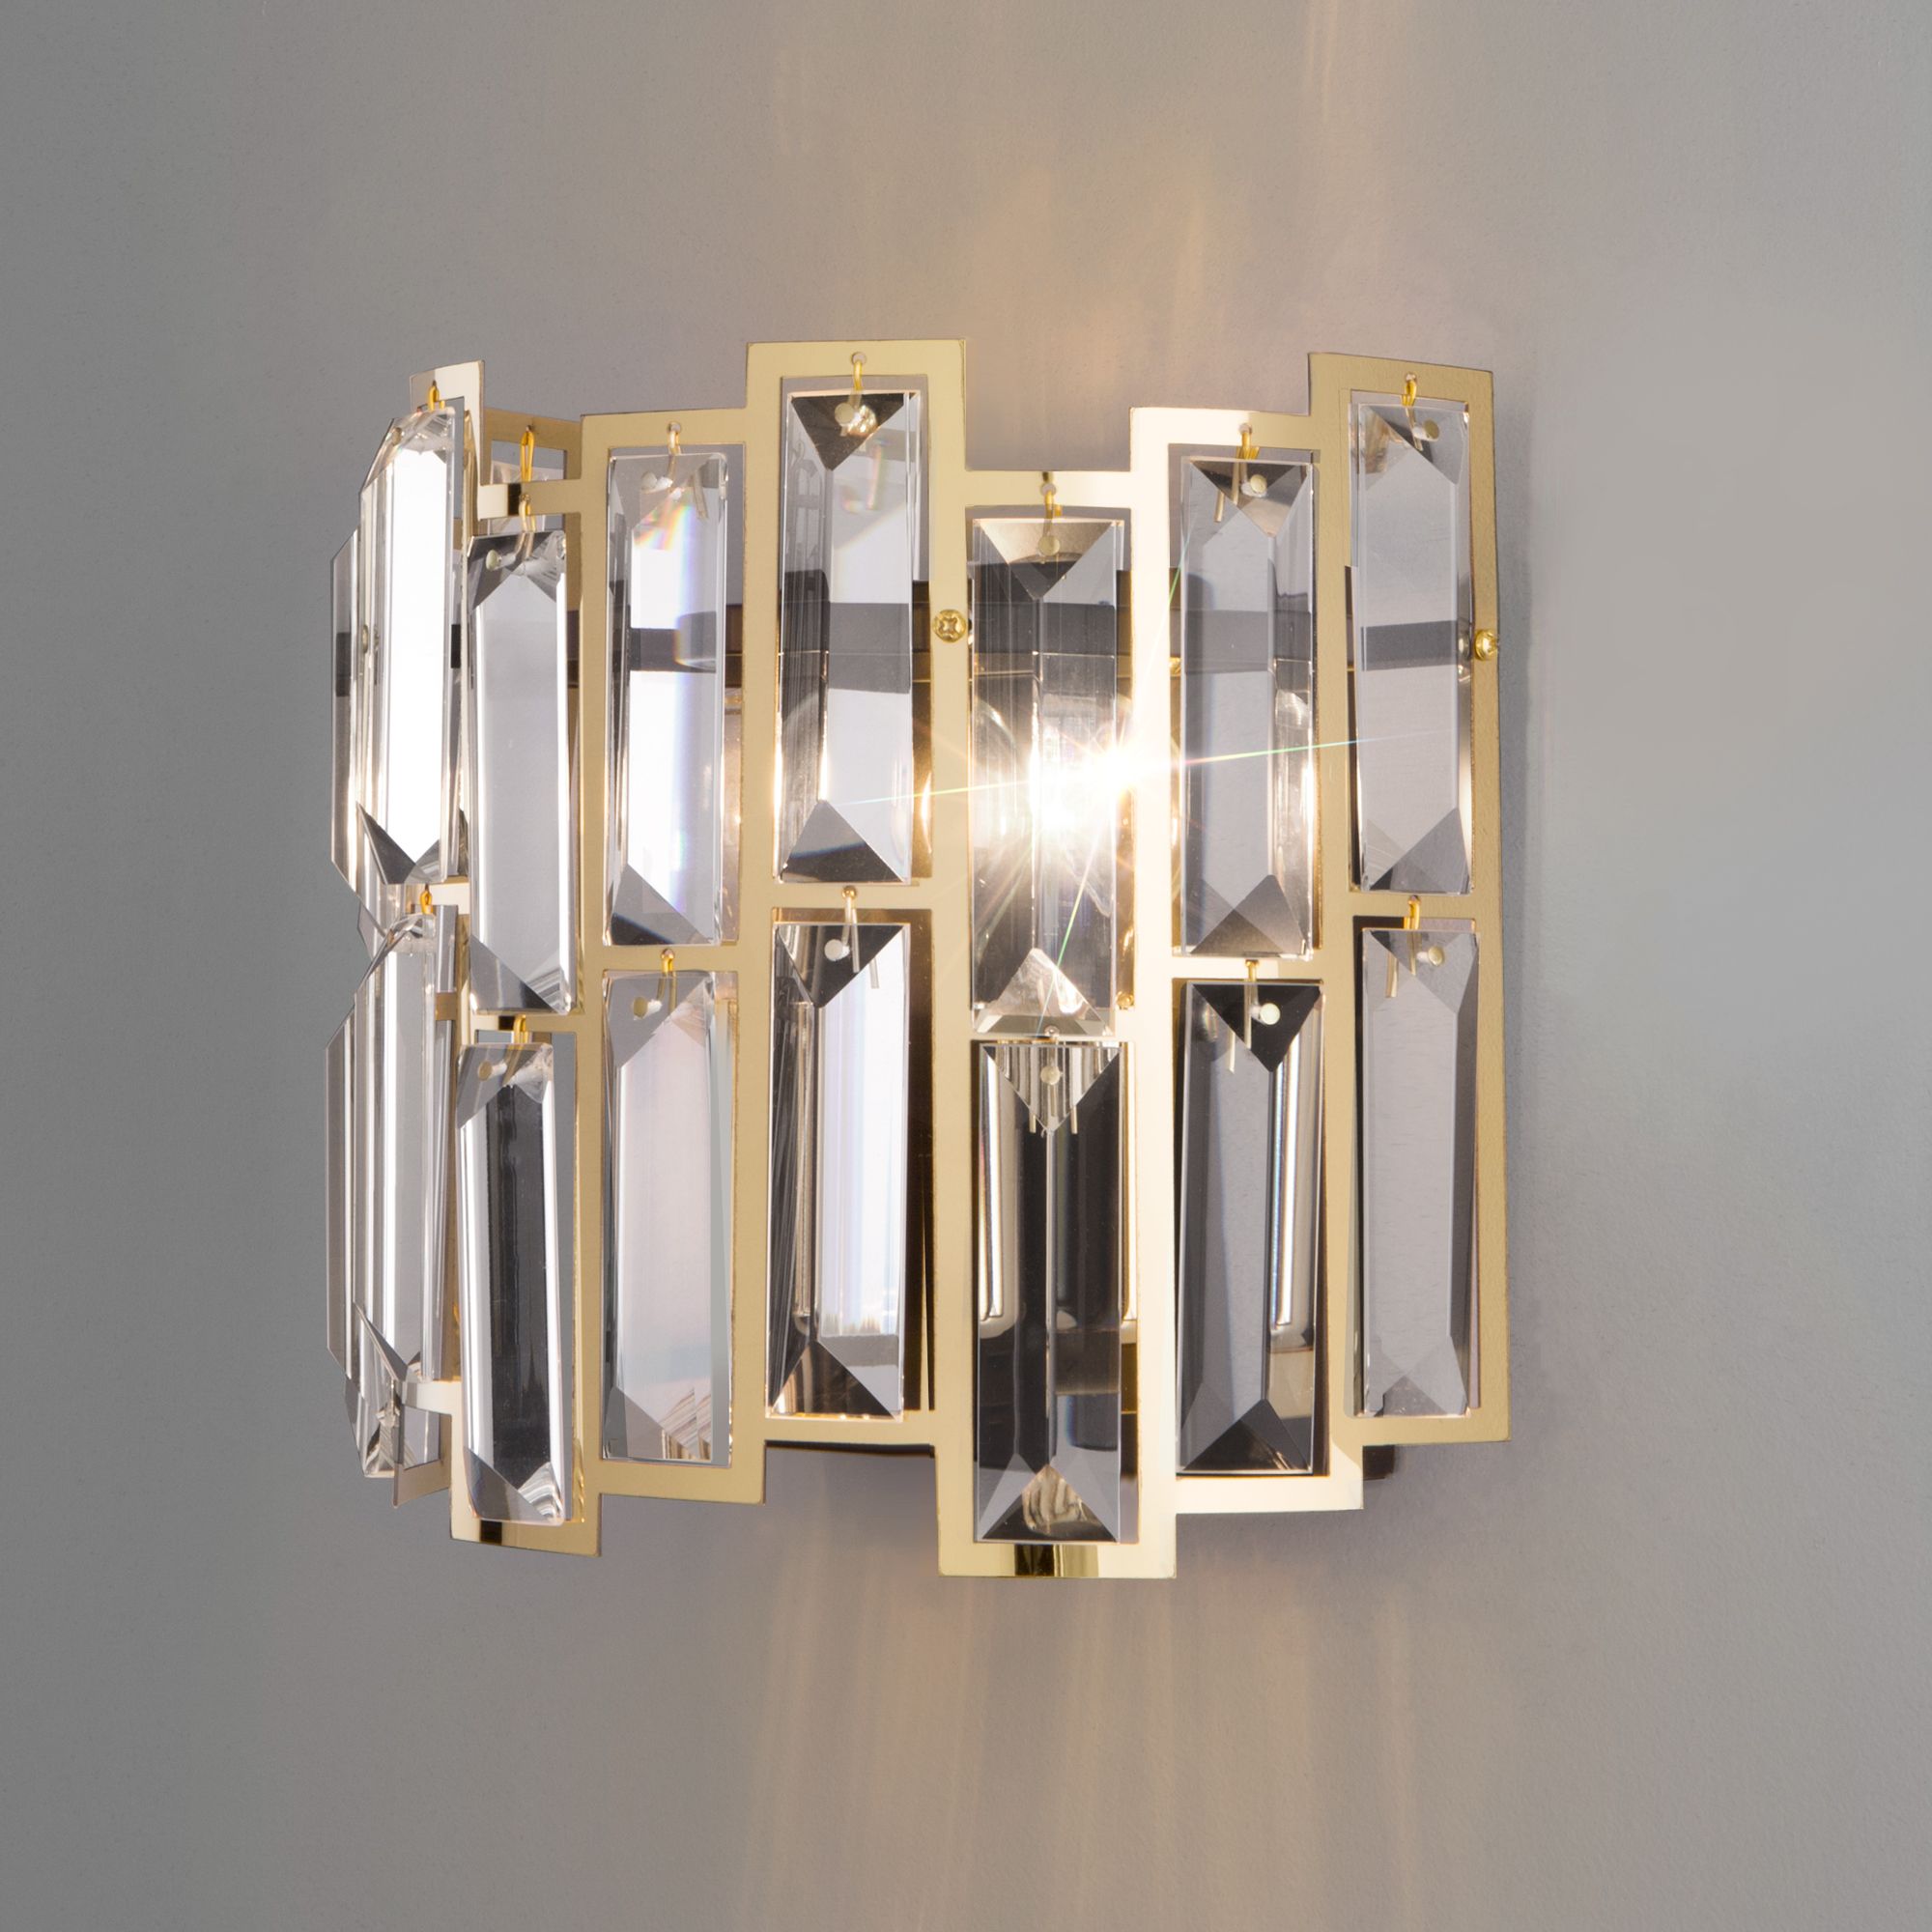 Настенный светильник с хрусталем Bogate's Zolletta 339/2 золото / черный. Фото 1